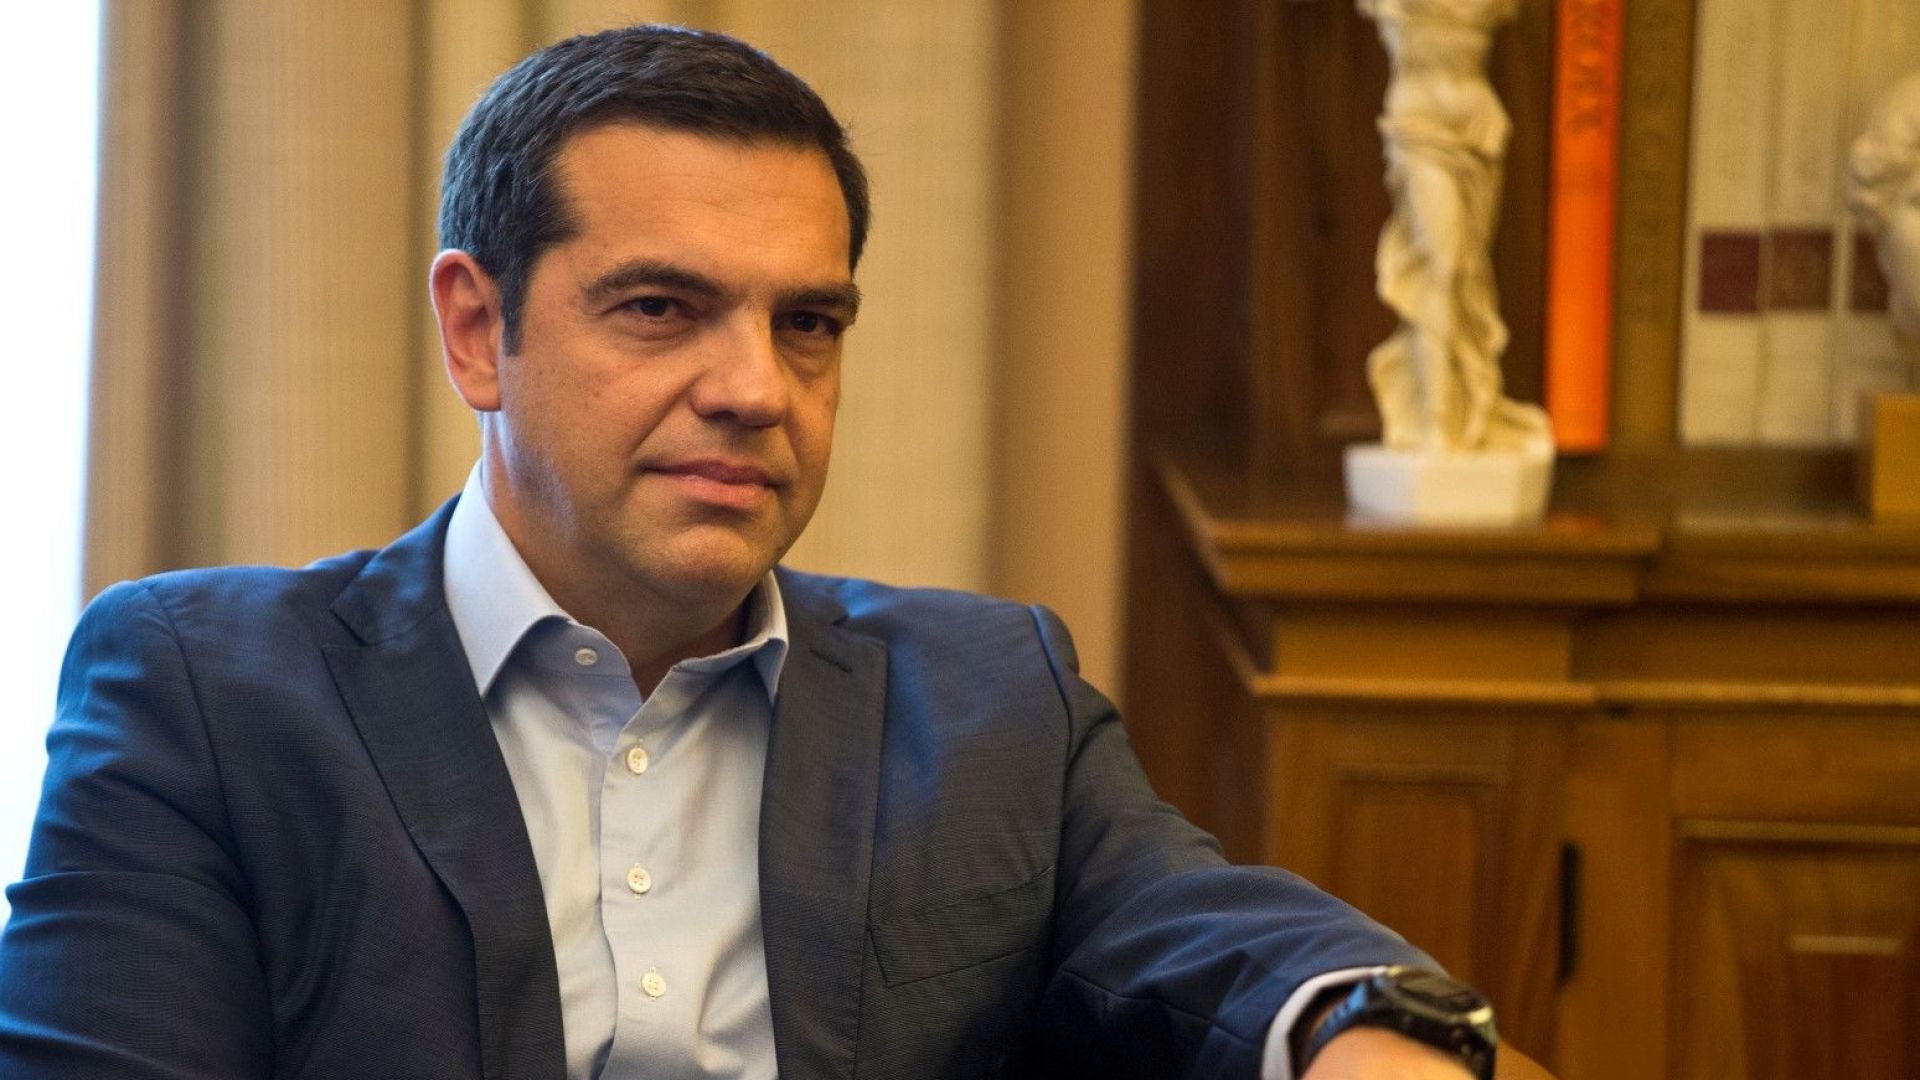 Гръцкият премиер Алексис Ципрас заяви, че парламентарните избори в Гърция